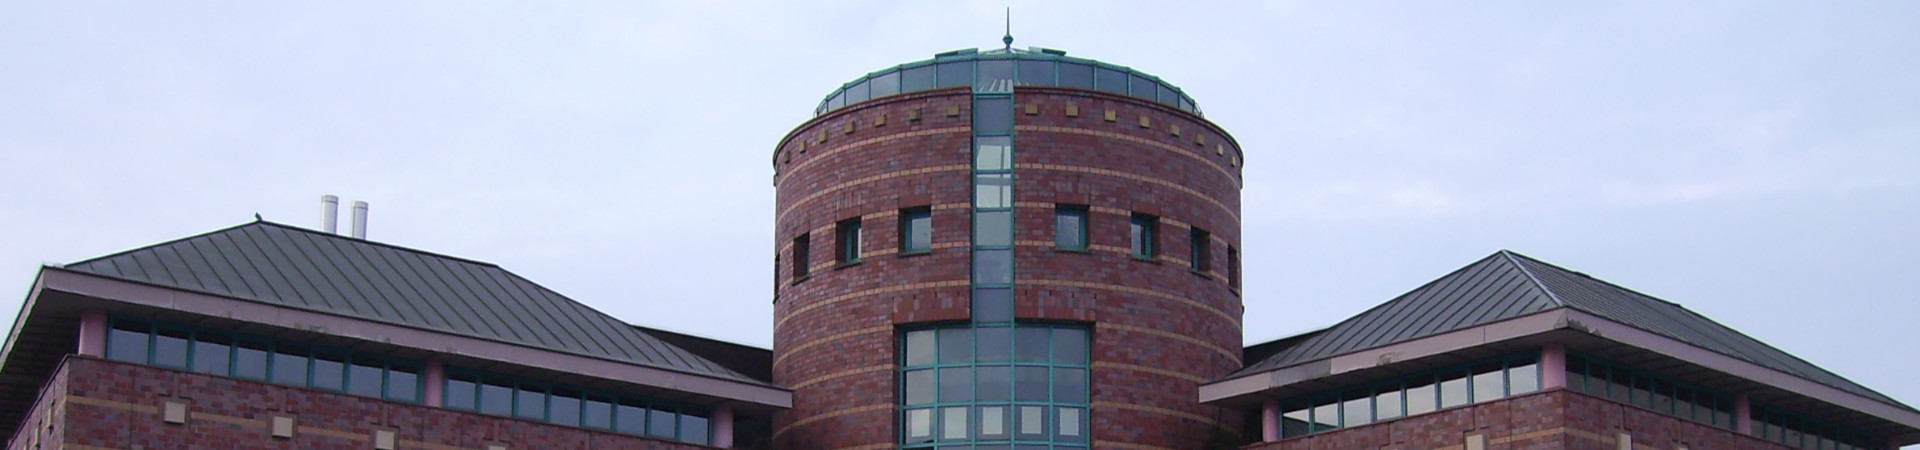 Ingenieurbüro Hammes - Viersen / Mönchengladbach - Neubau Stadtbibliothek